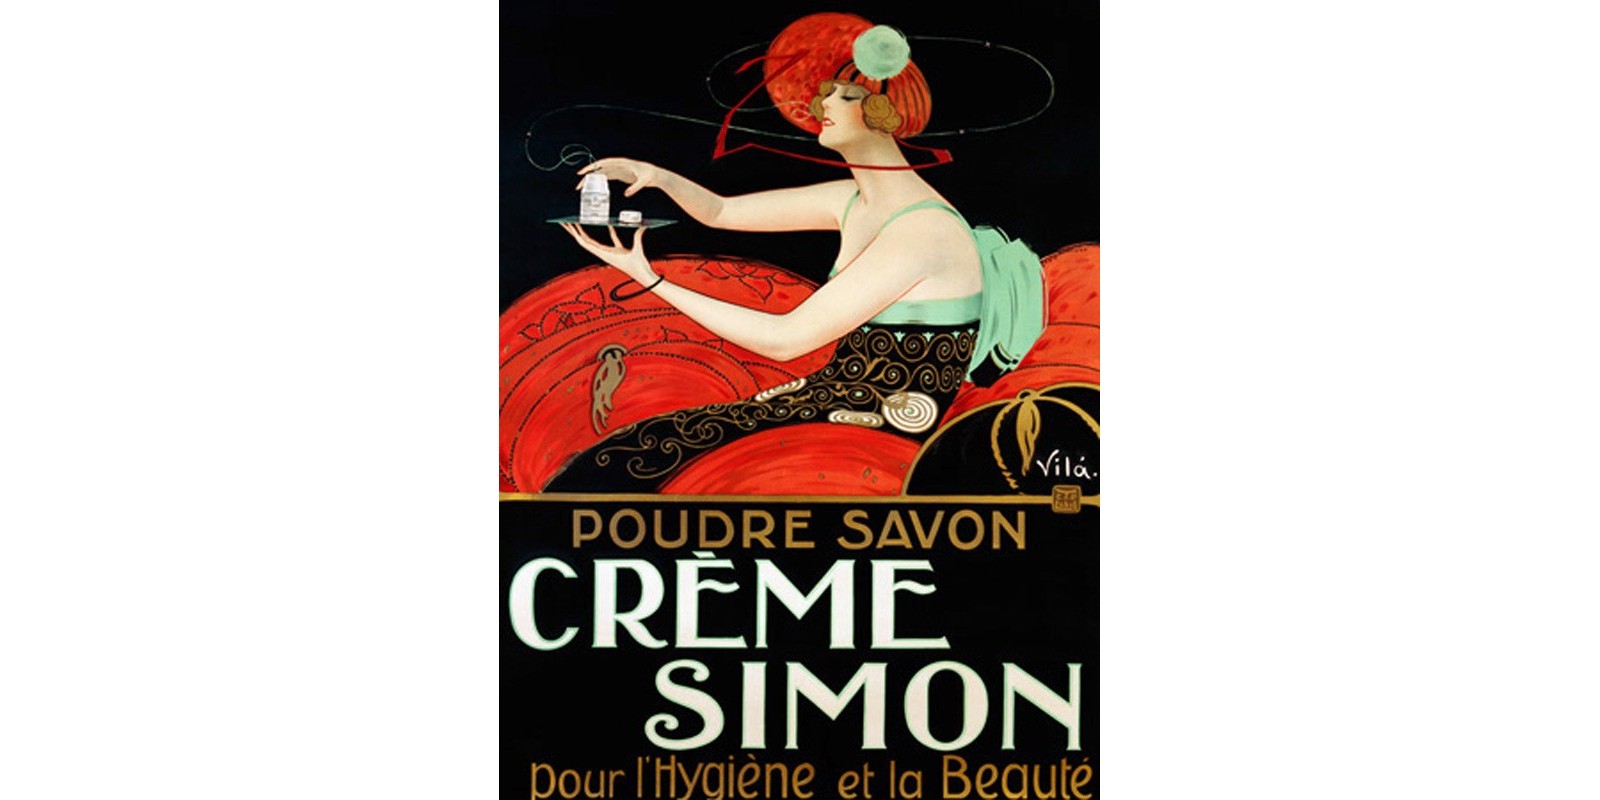 Vila - Crème Simon, ca. 1925